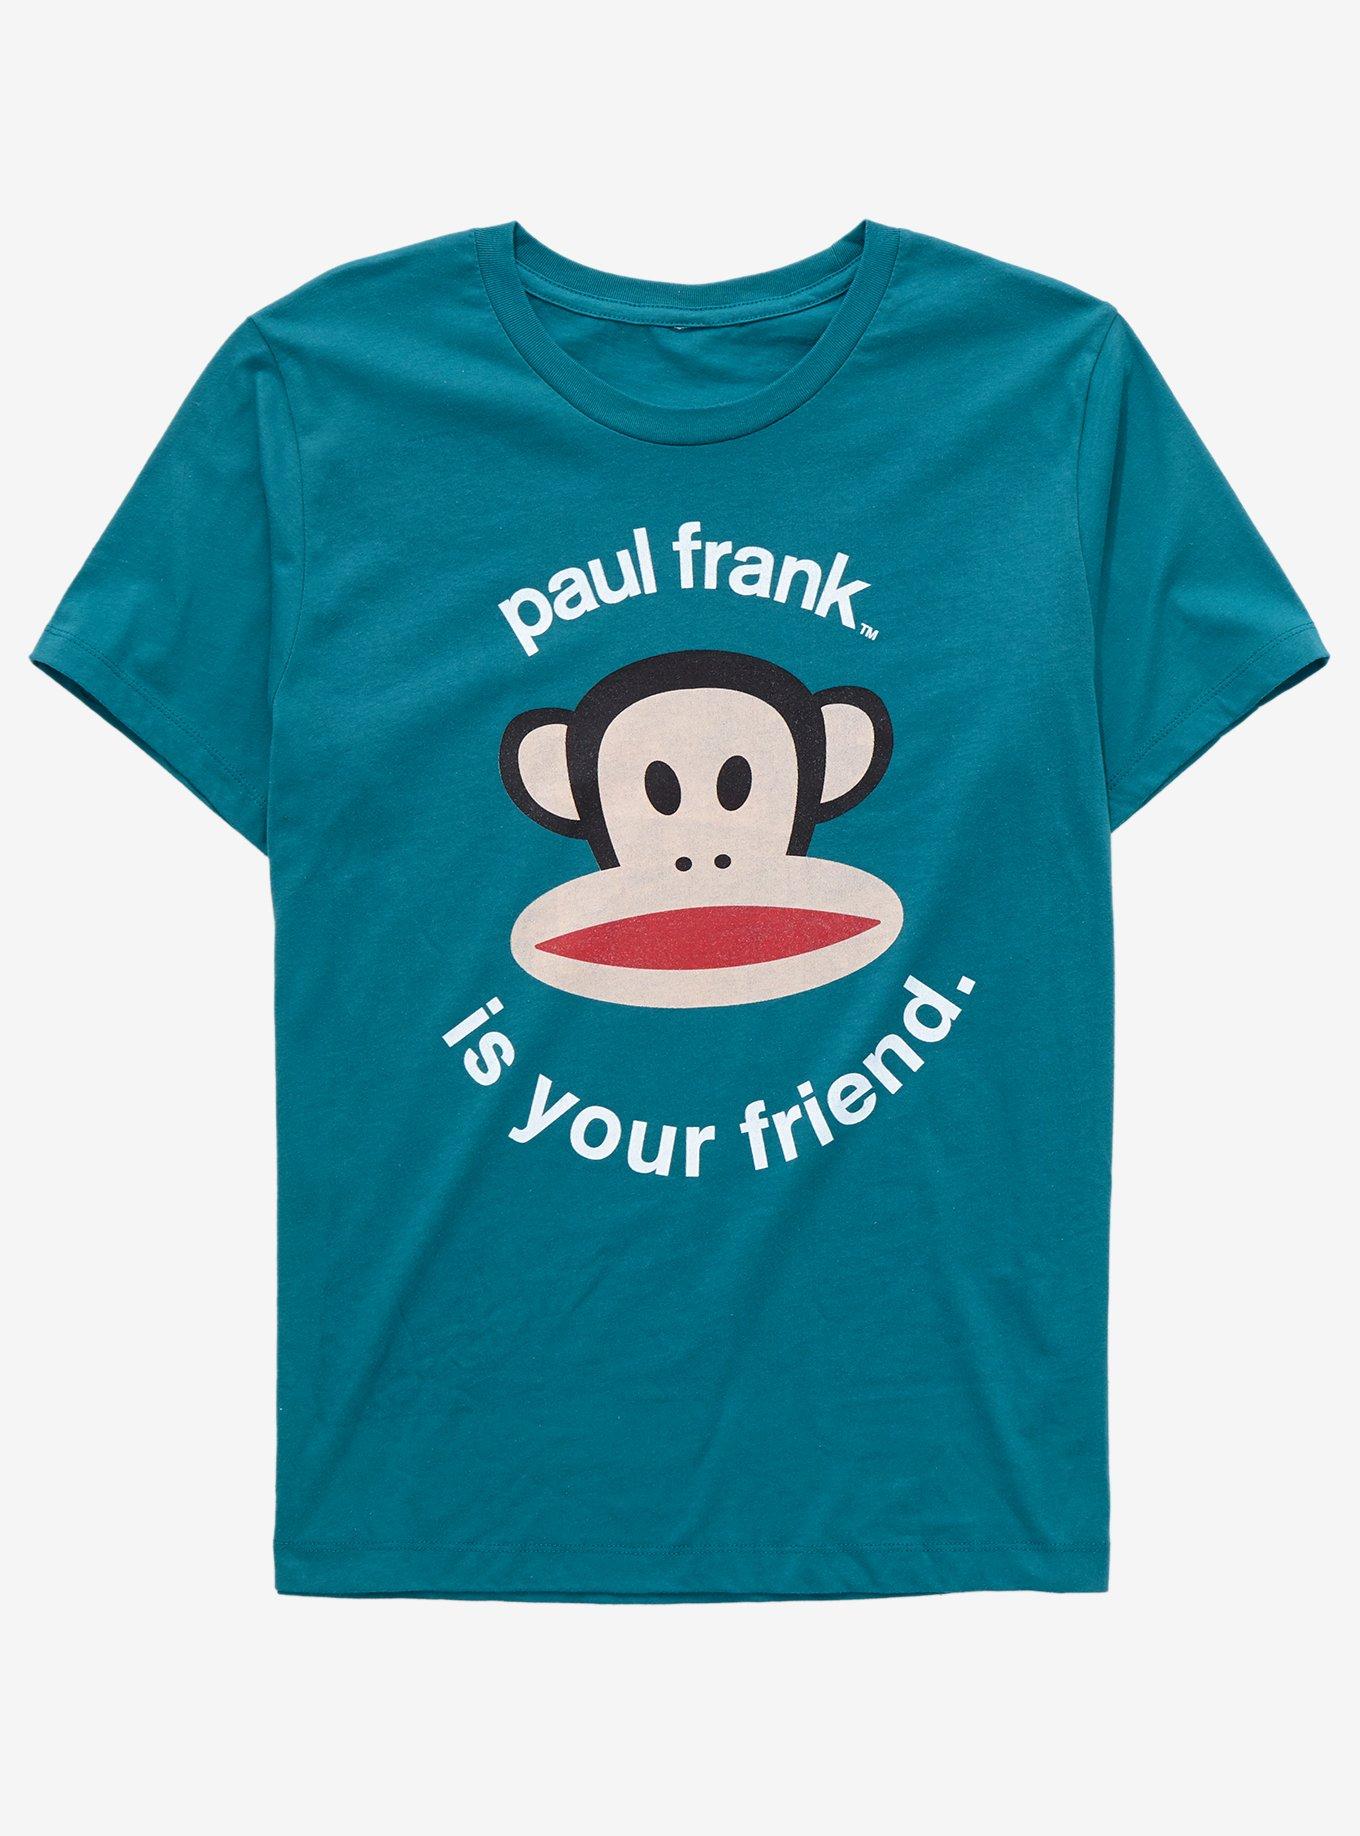 Paul Frank Julius the Monkey Paul Frank is Your Friend Women's T